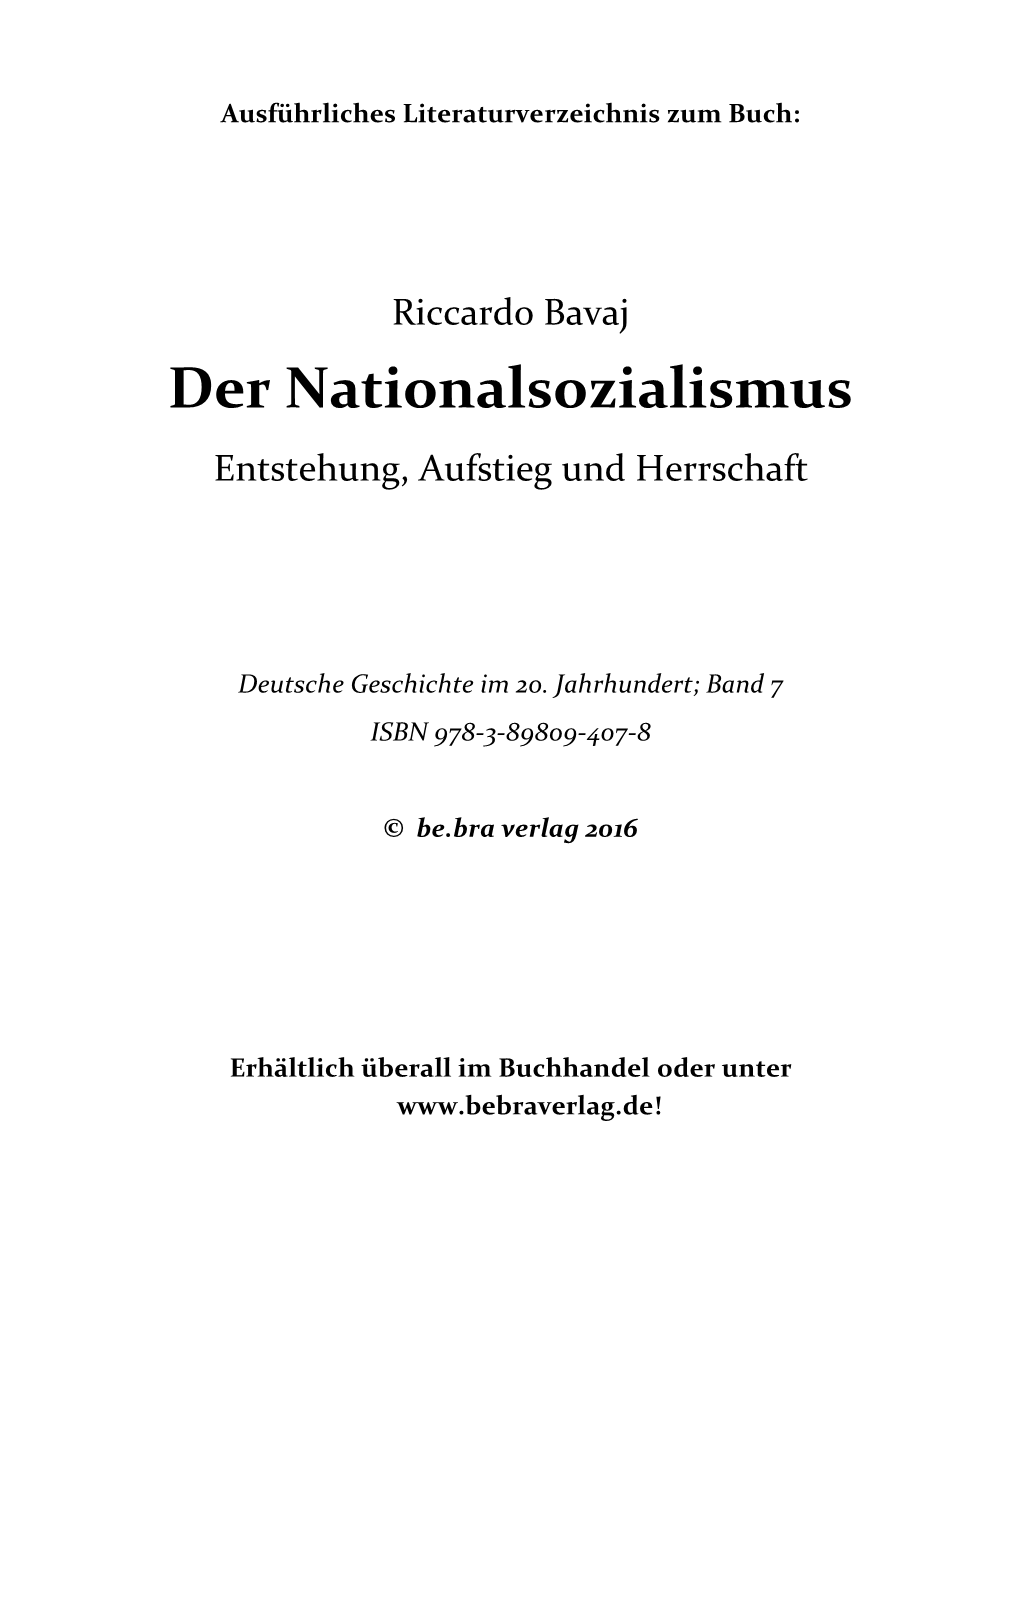 Der Nationalsozialismus Entstehung, Aufstieg Und Herrschaft